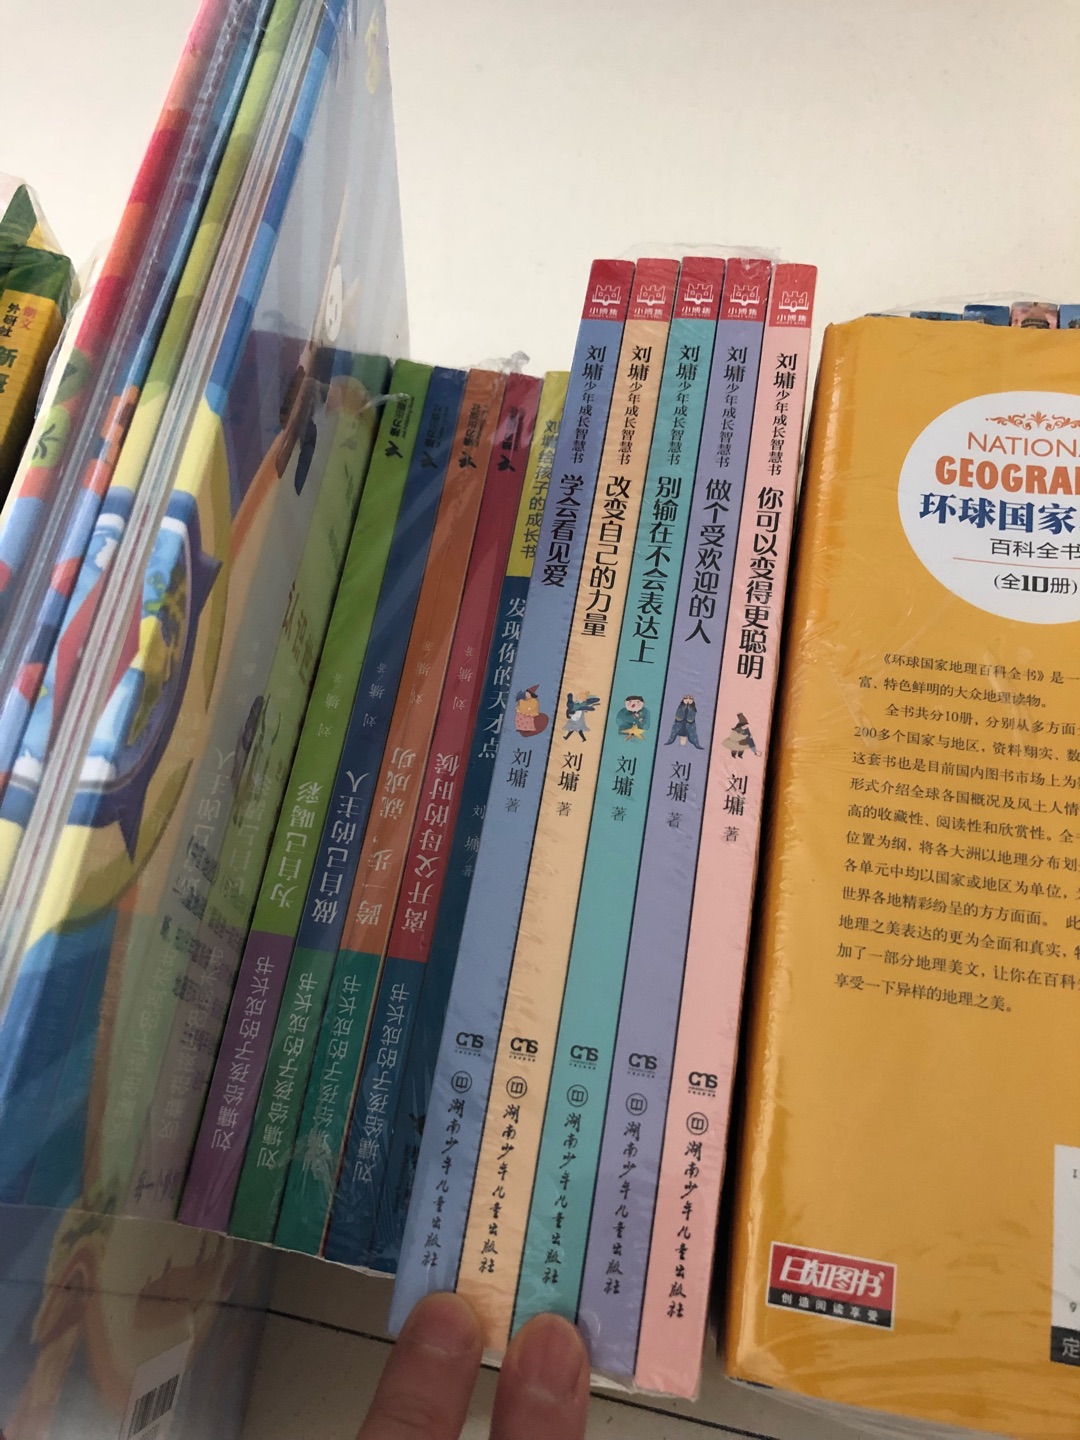 本人比较喜欢刘墉的书，感觉比较适合中学生读。他的书就像心灵鸡汤?，对中学生的健康成长很有帮助虽然儿子上小学，一样可以看懂